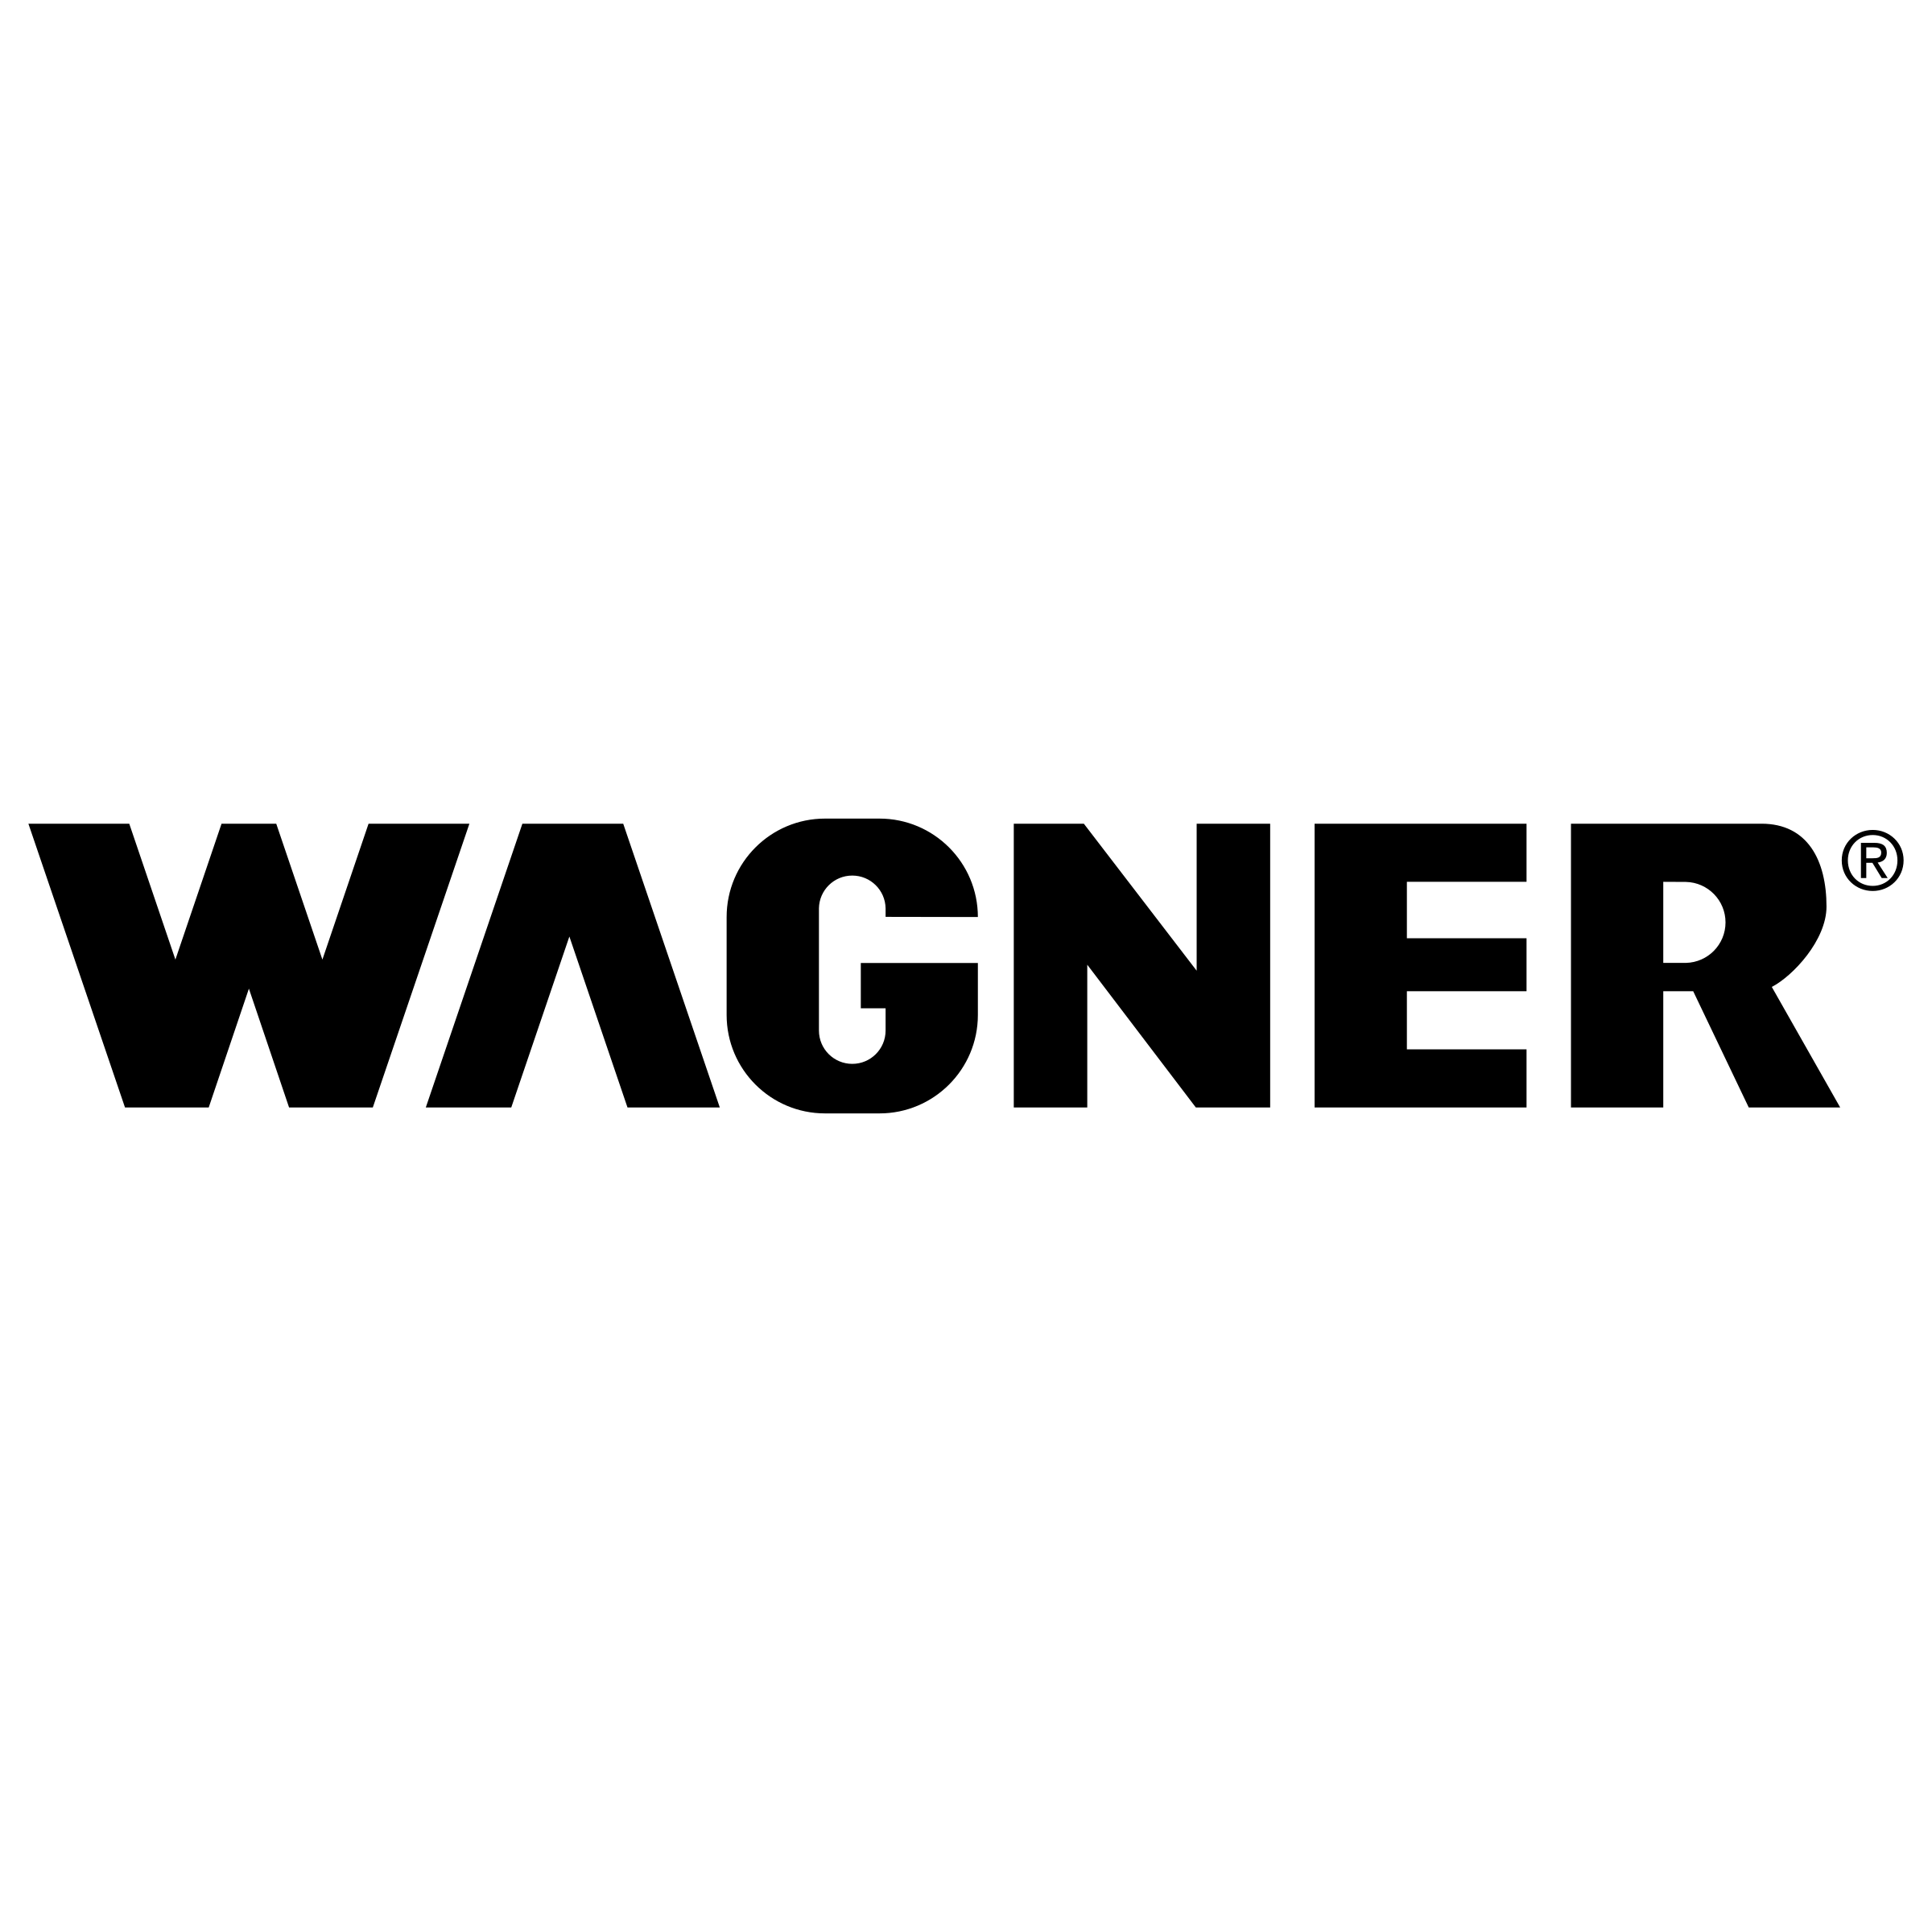 Wagner Logo - Wagner Logo PNG Transparent & SVG Vector - Freebie Supply